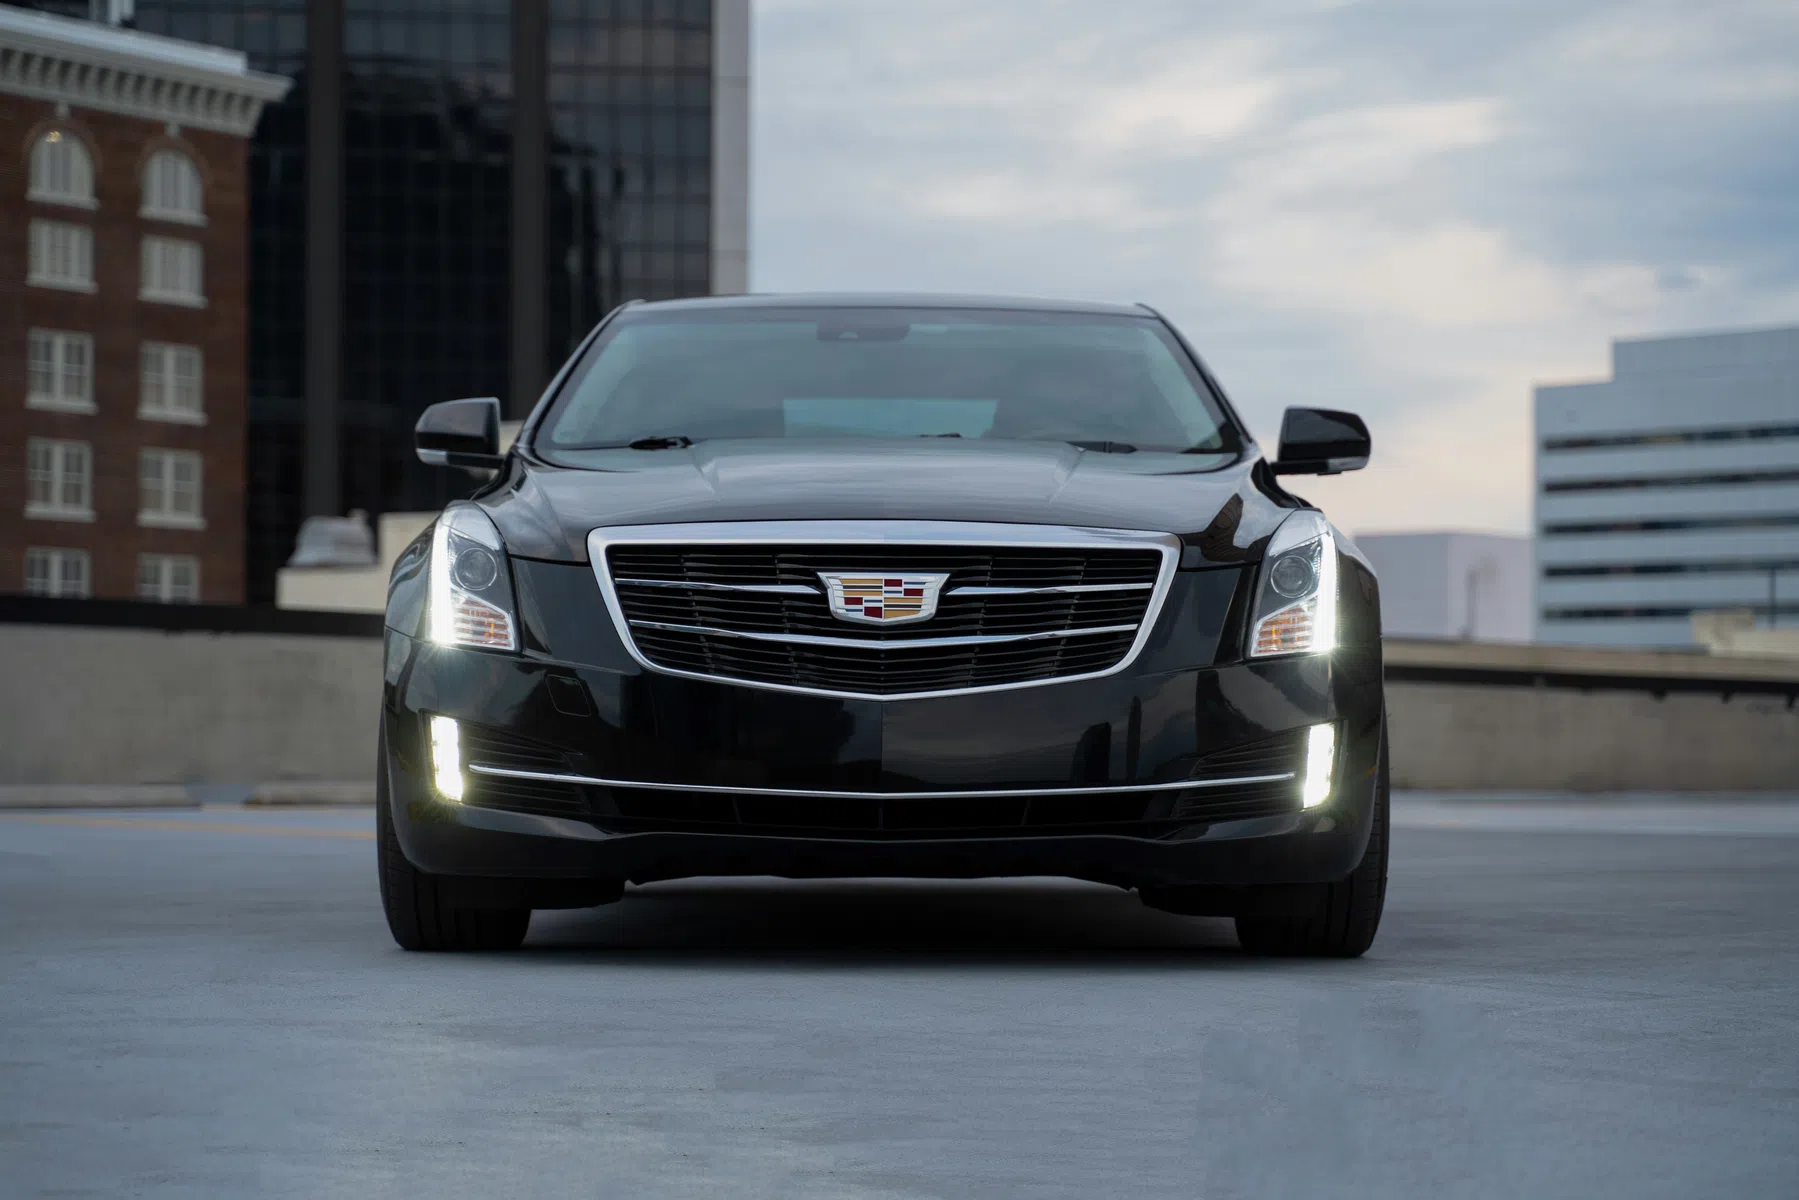 General Motors stuurde jarenlang rijdersgedrag naar tussenpersonen verzekeraars 